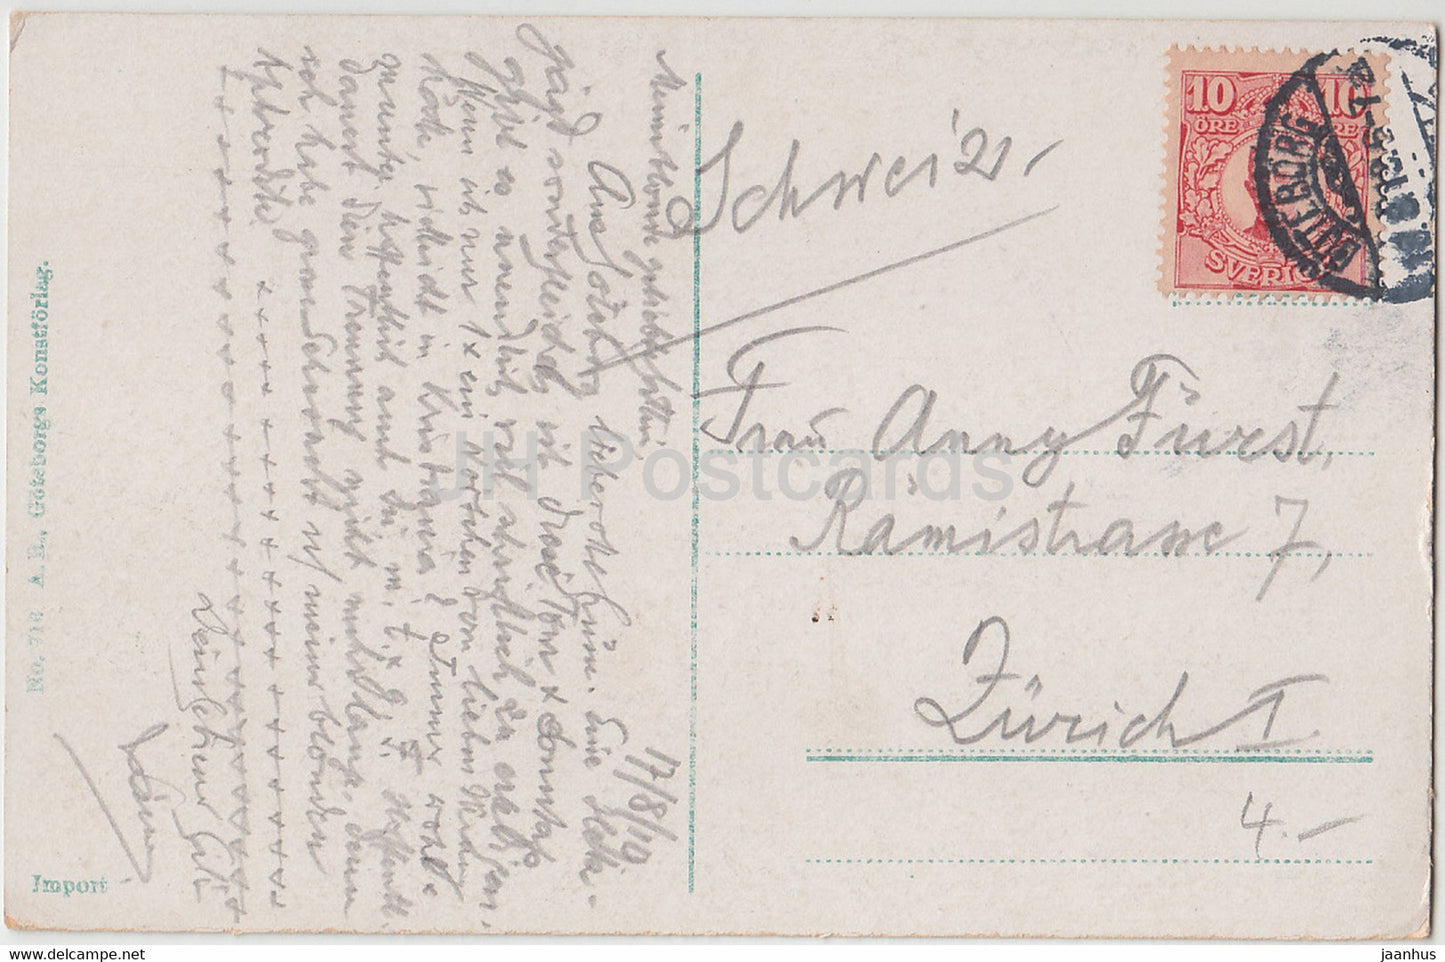 Trolleholm - Skane - alte Postkarte - 1910 - Schweden - gebraucht